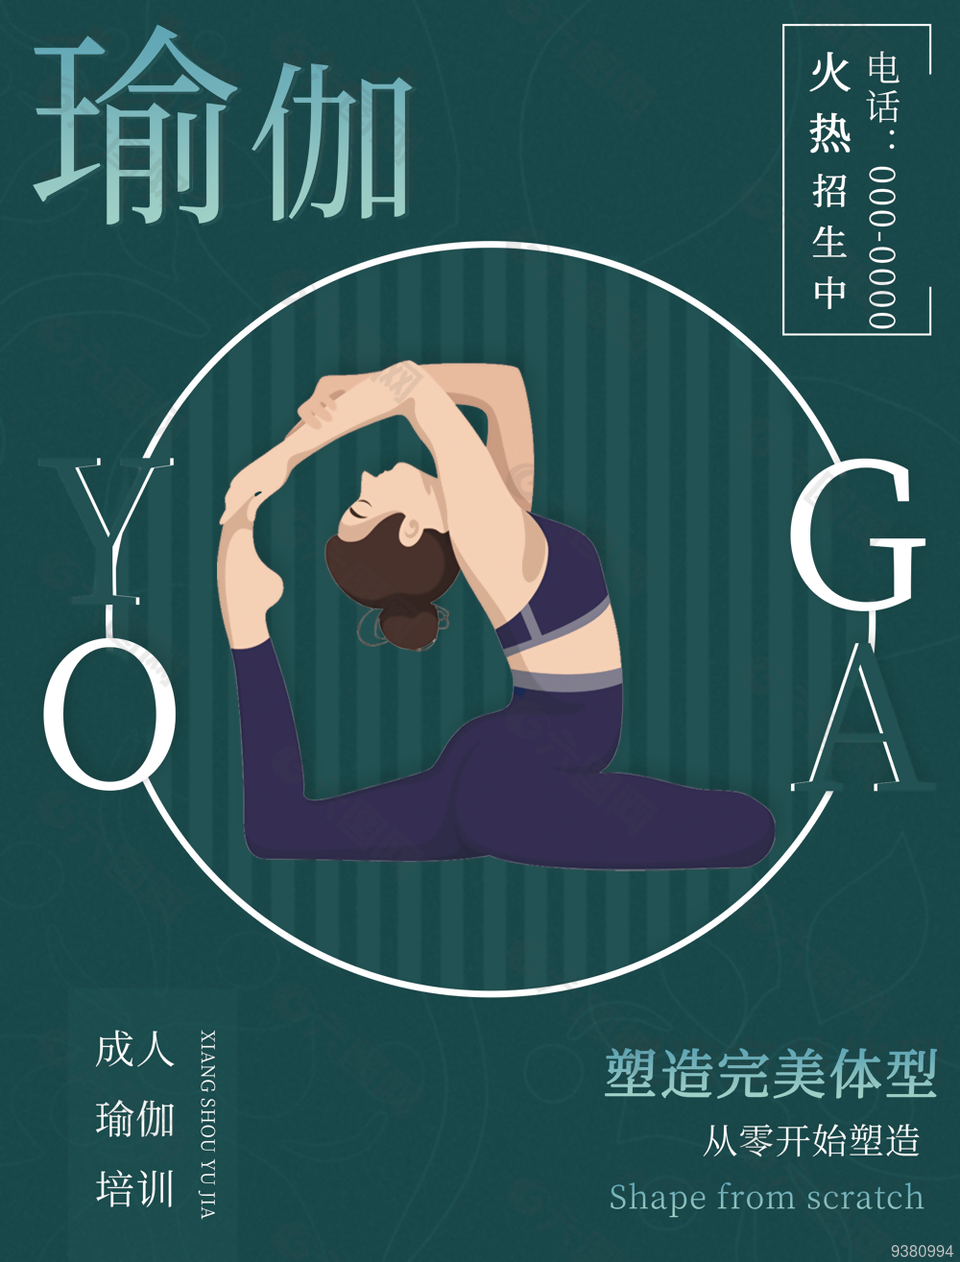 国际瑜伽日瑜伽宣传海报